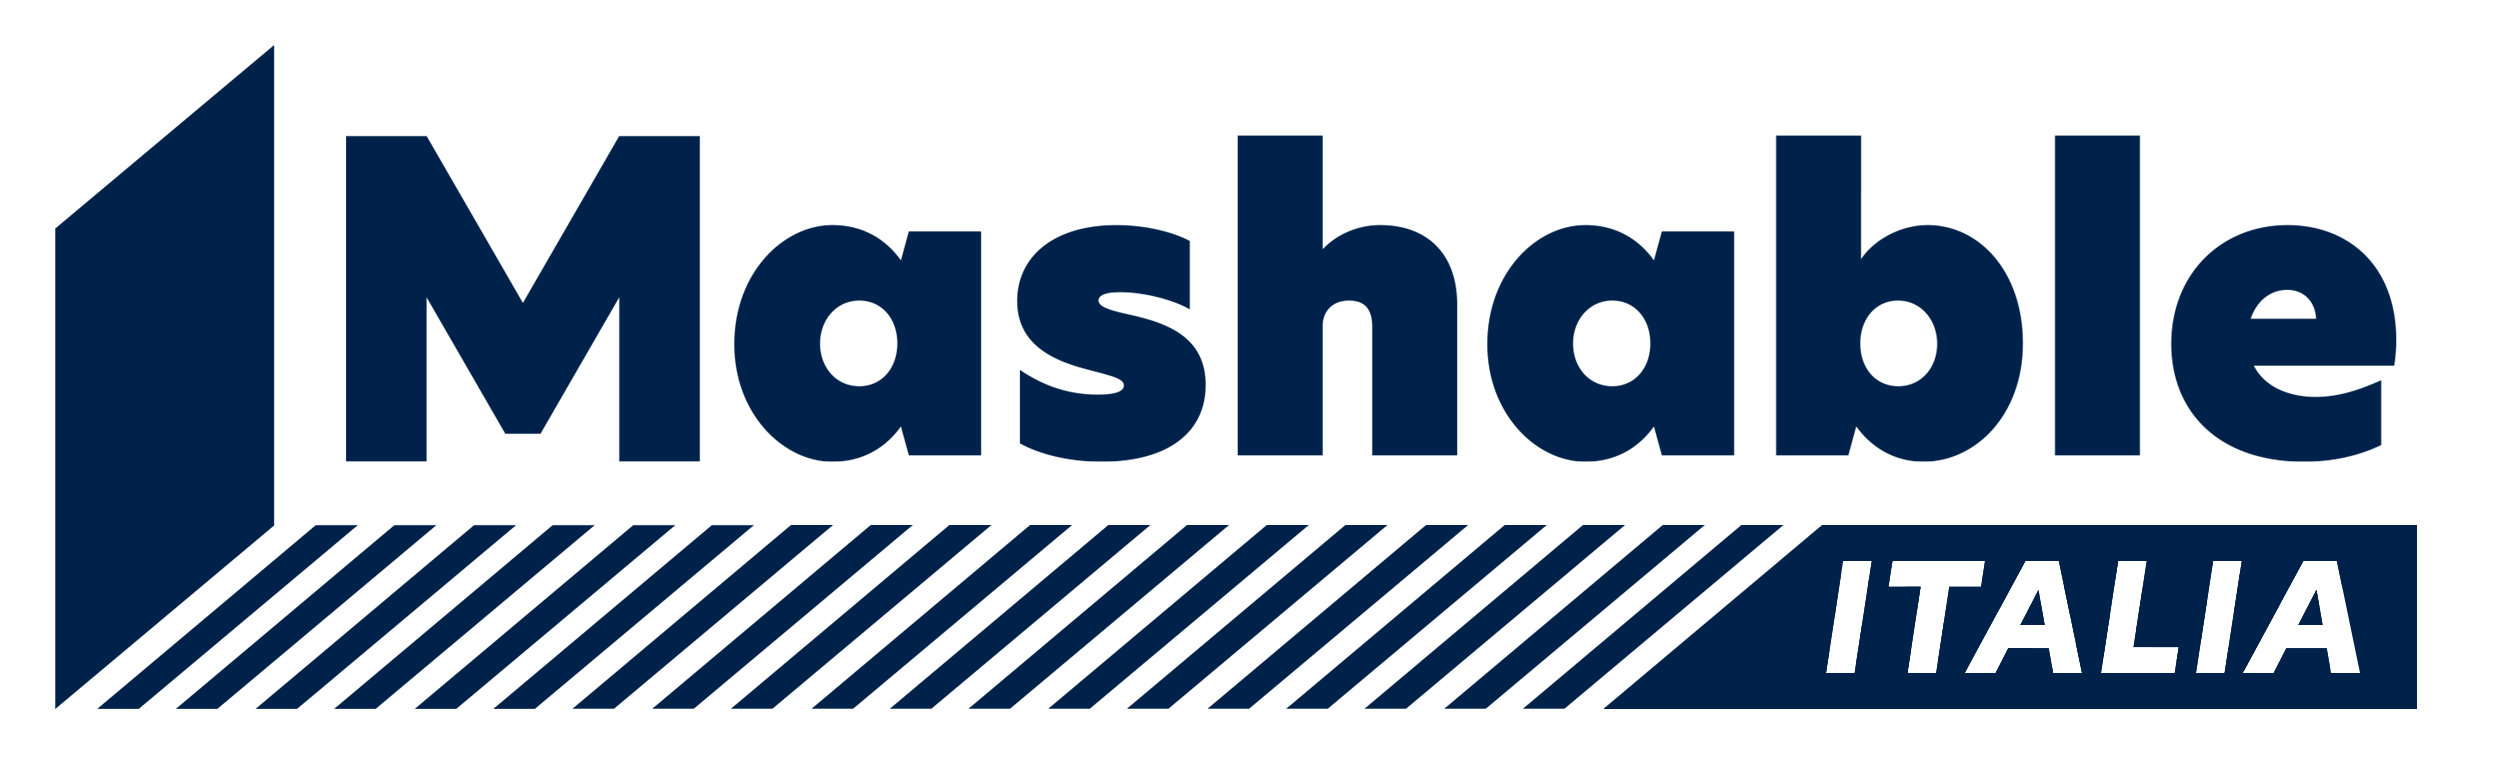 Logo Mashable